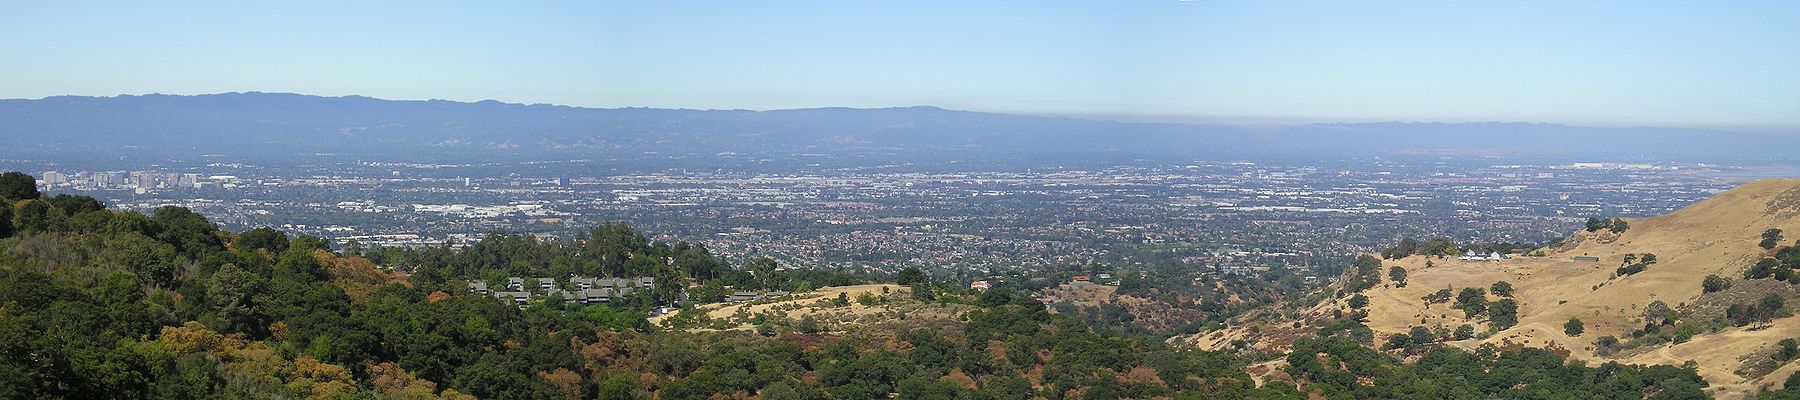 Pogled na Silicijsku dolinu u smjeru zapada iz Alum Rock parka pored San Josea. S lijeva na desno (od juga prema sjeveru): Mountain View, Sunnyvale, Palo Alto itd. Na desnom kraju slike vidi se dio Zaljeva San Francisco.